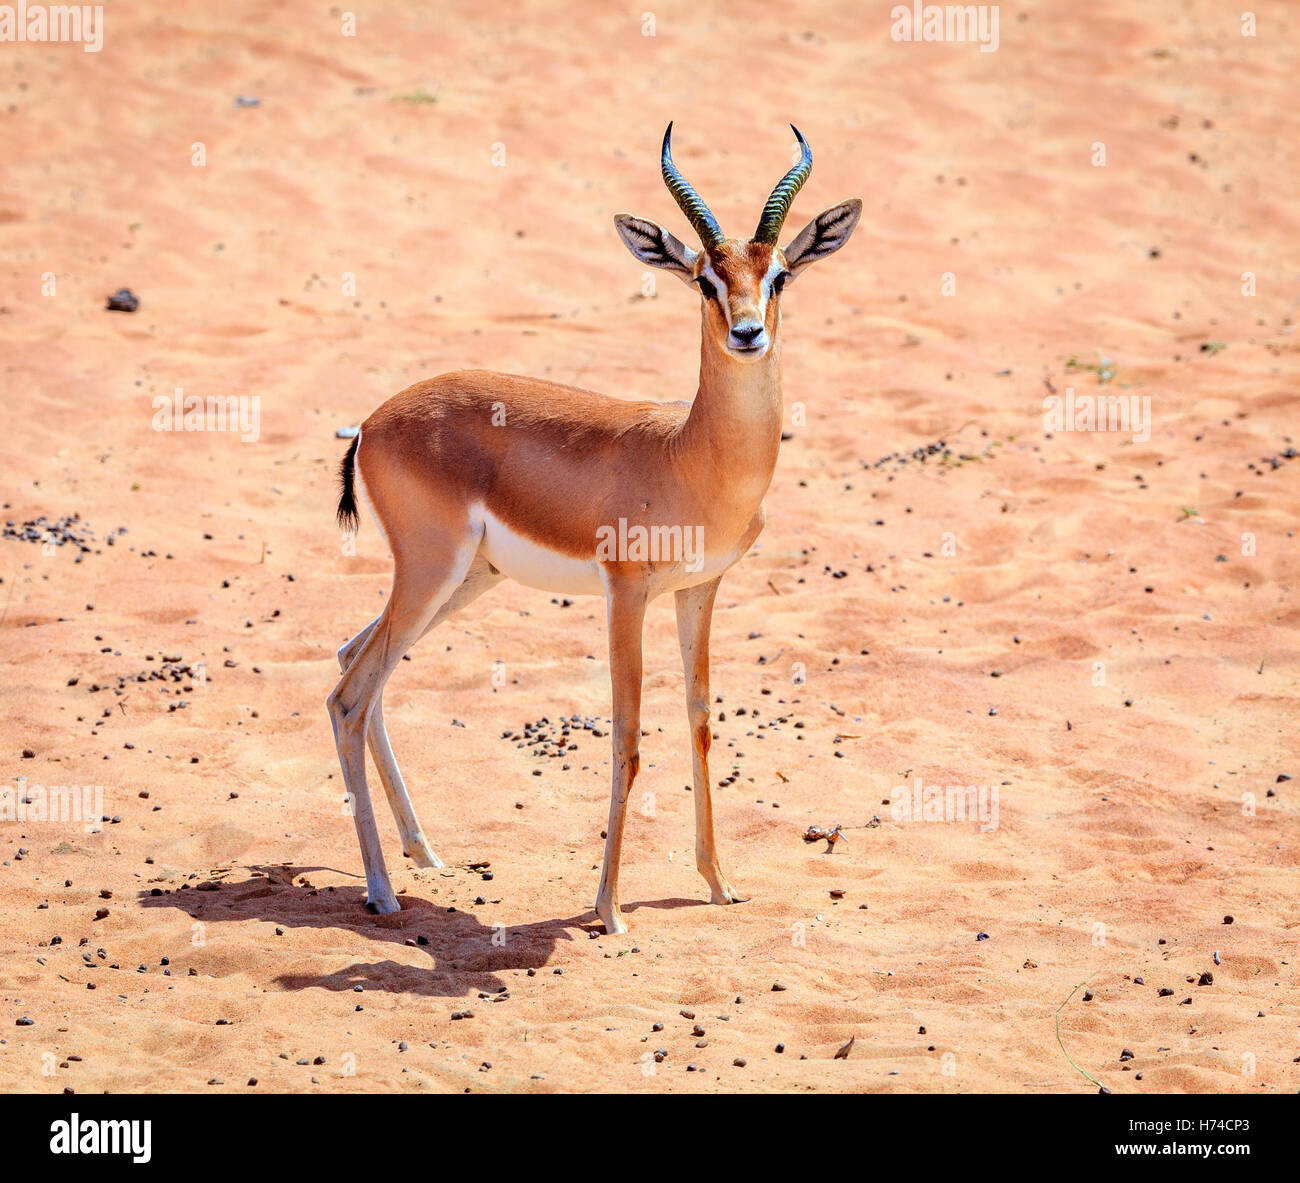 La gazelle d'Arabie dans le désert d'une réserve de conservation près de DUBAÏ, ÉMIRATS ARABES UNIS Banque D'Images